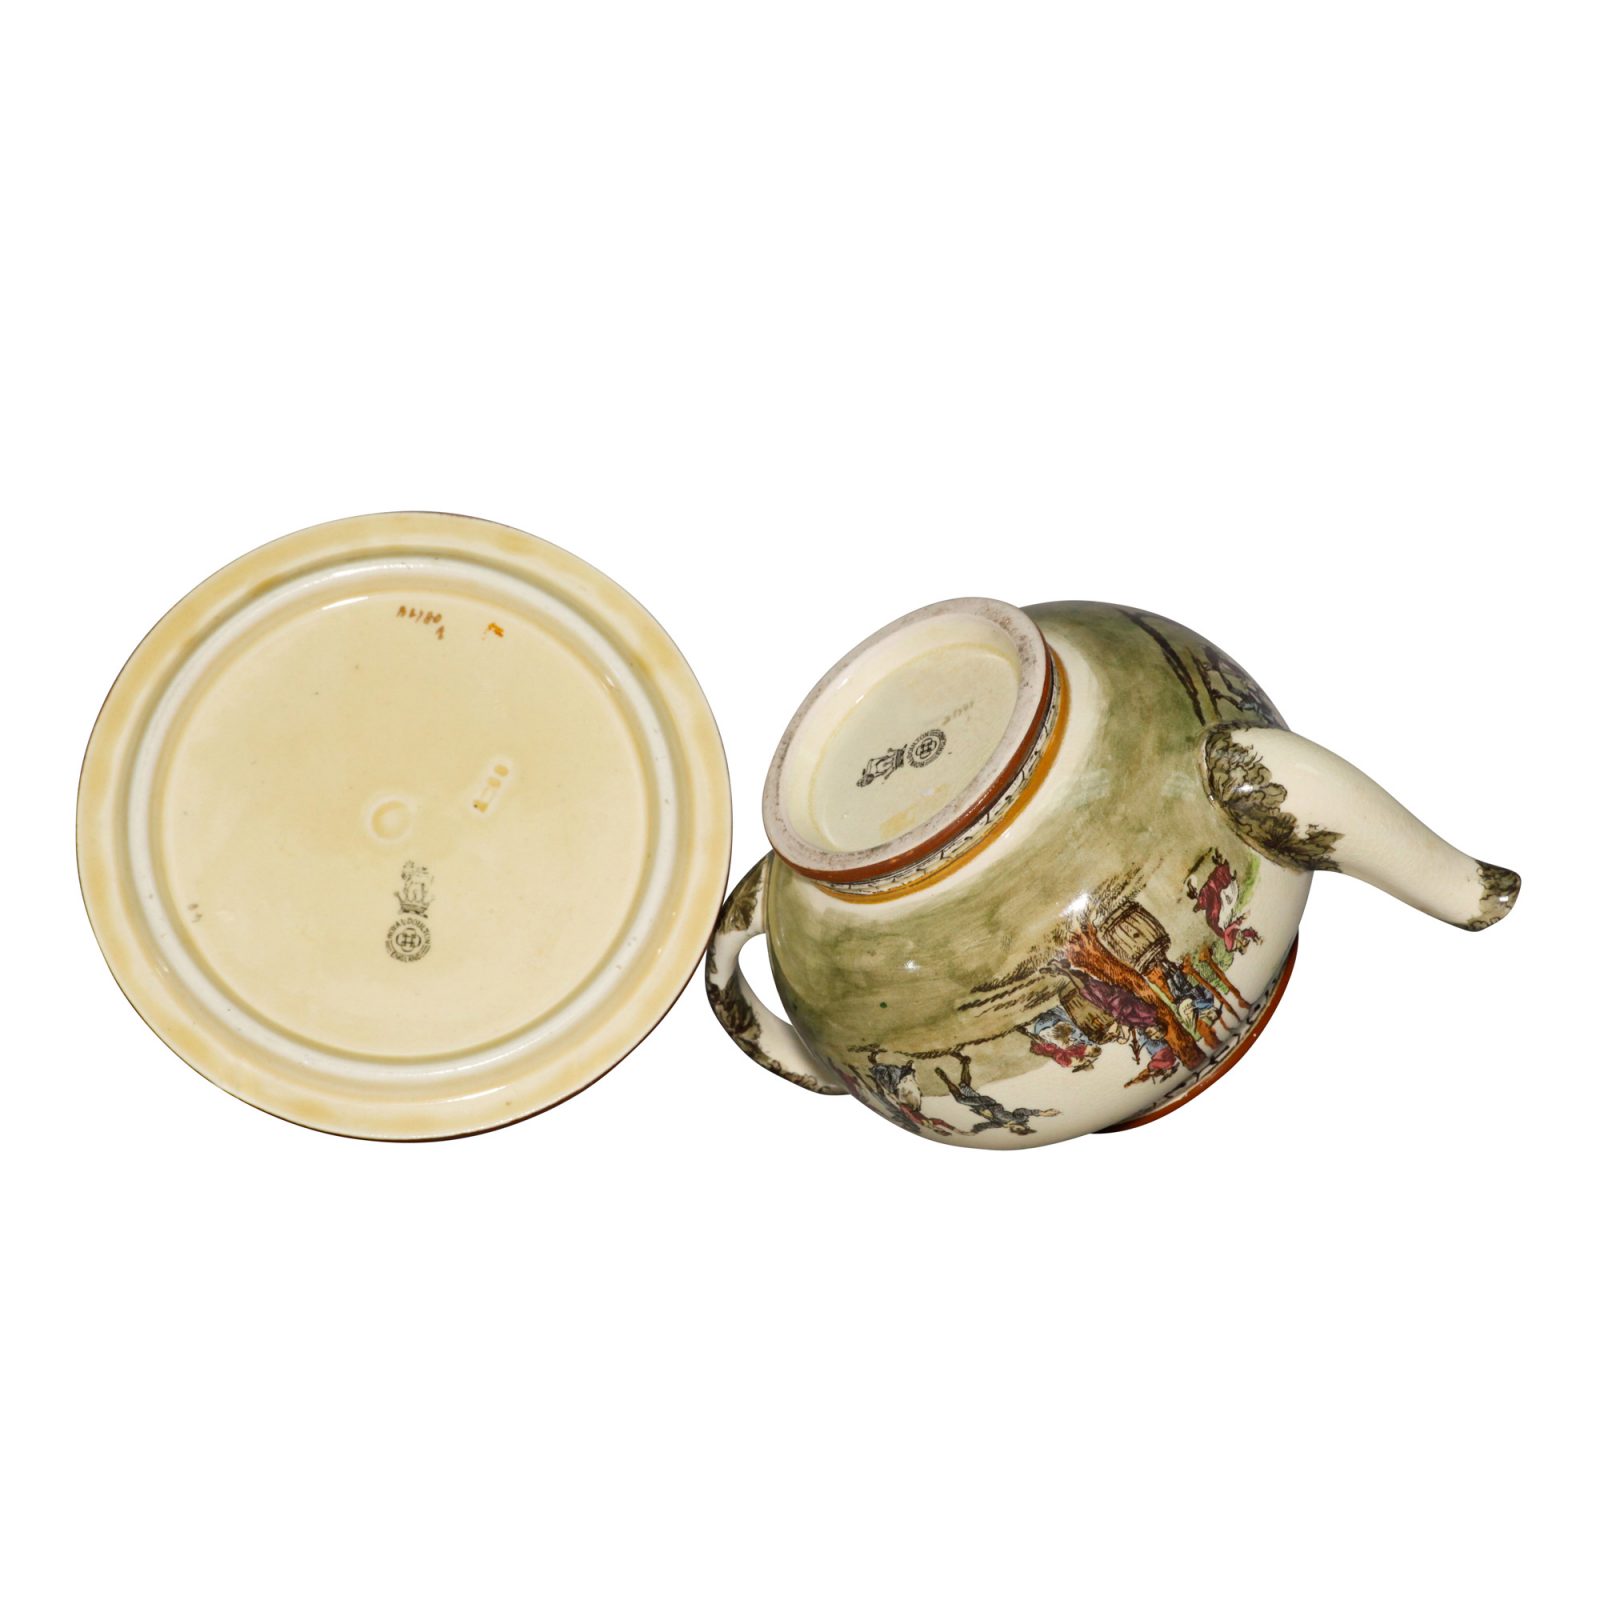 Village Fete D2780 - 2pc. Teapot and Trivet Set - Royal Doulton Seriesware